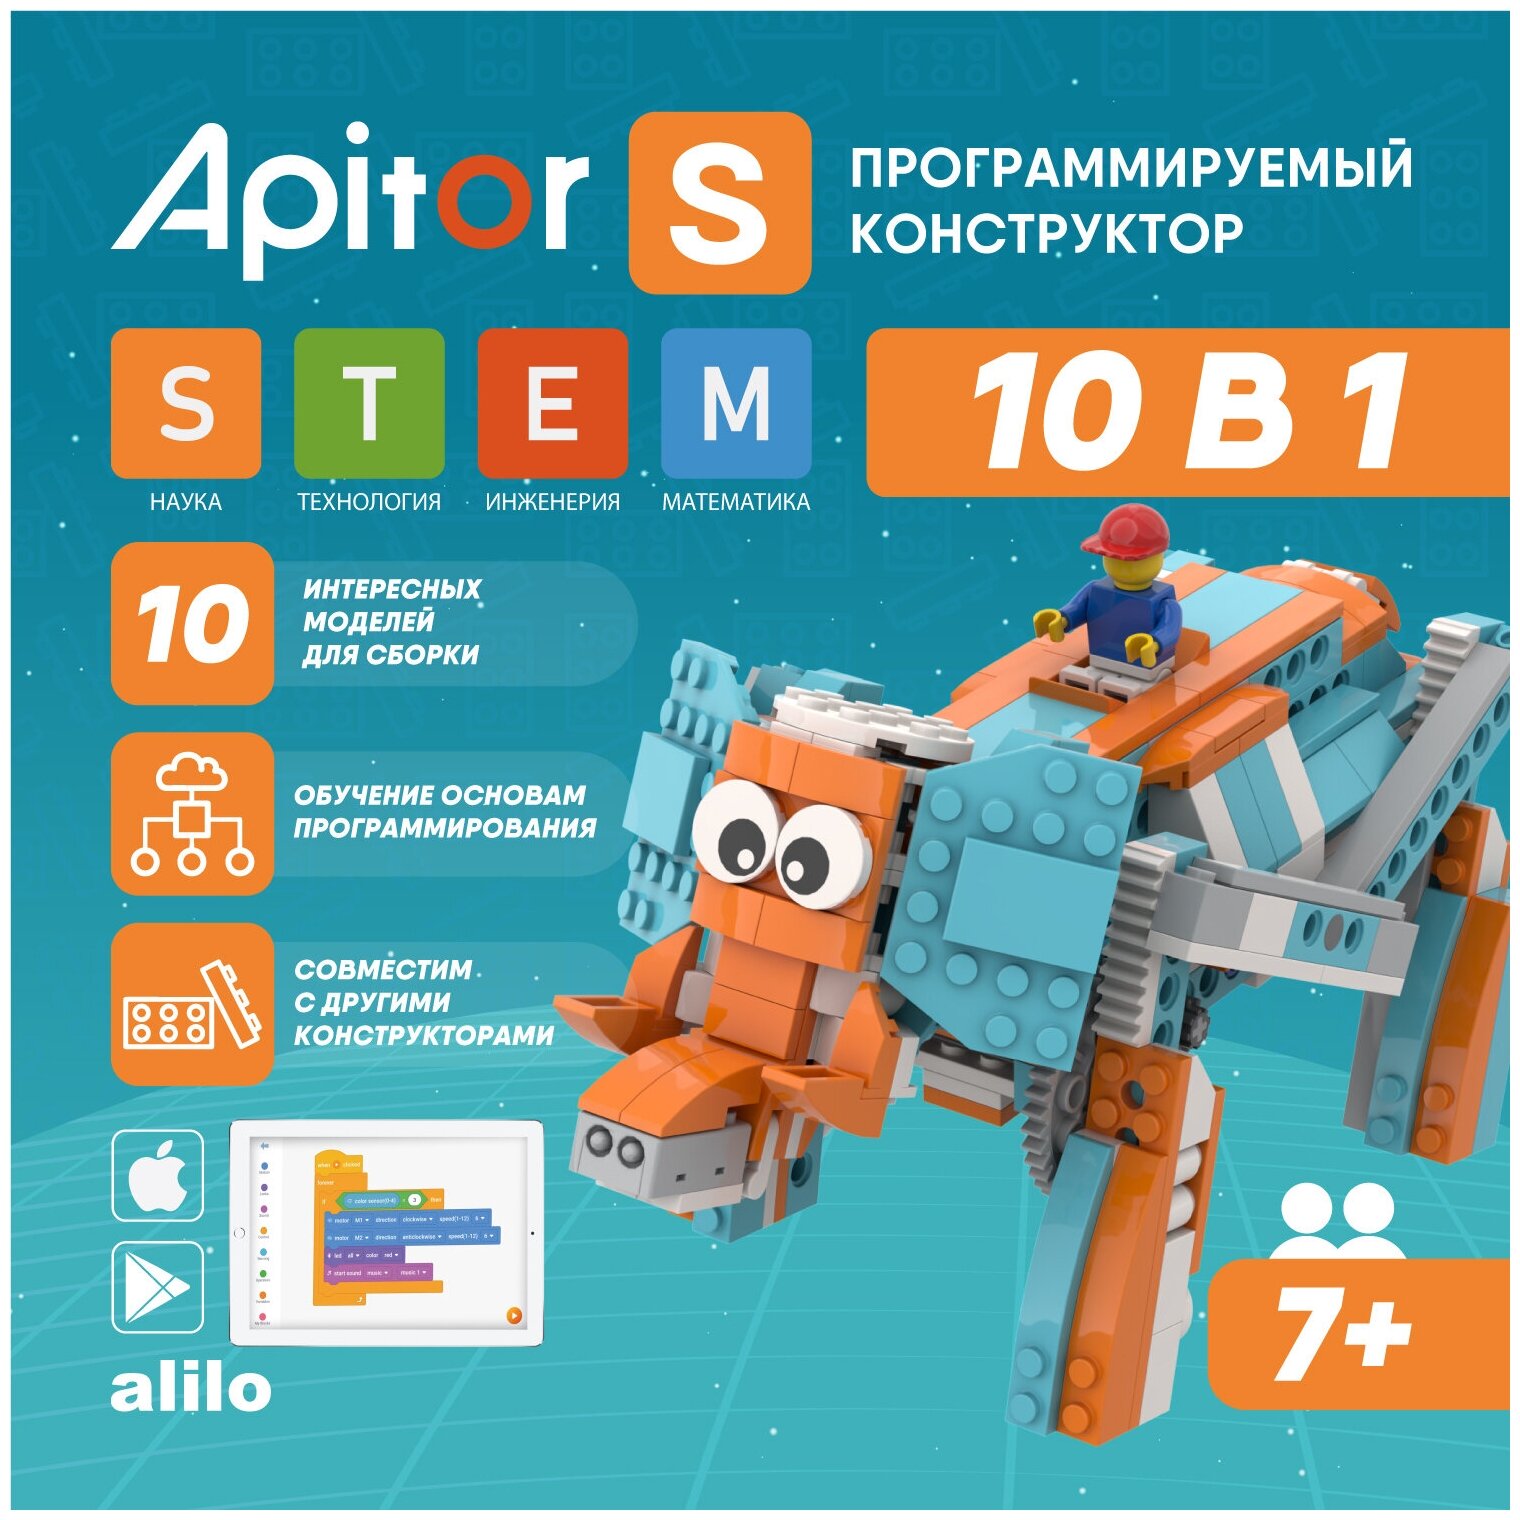 Электронный программируемый детский робот конструктор Apitor Robot S 10 моделей в 1. Игрушка для мальчиков и девочек